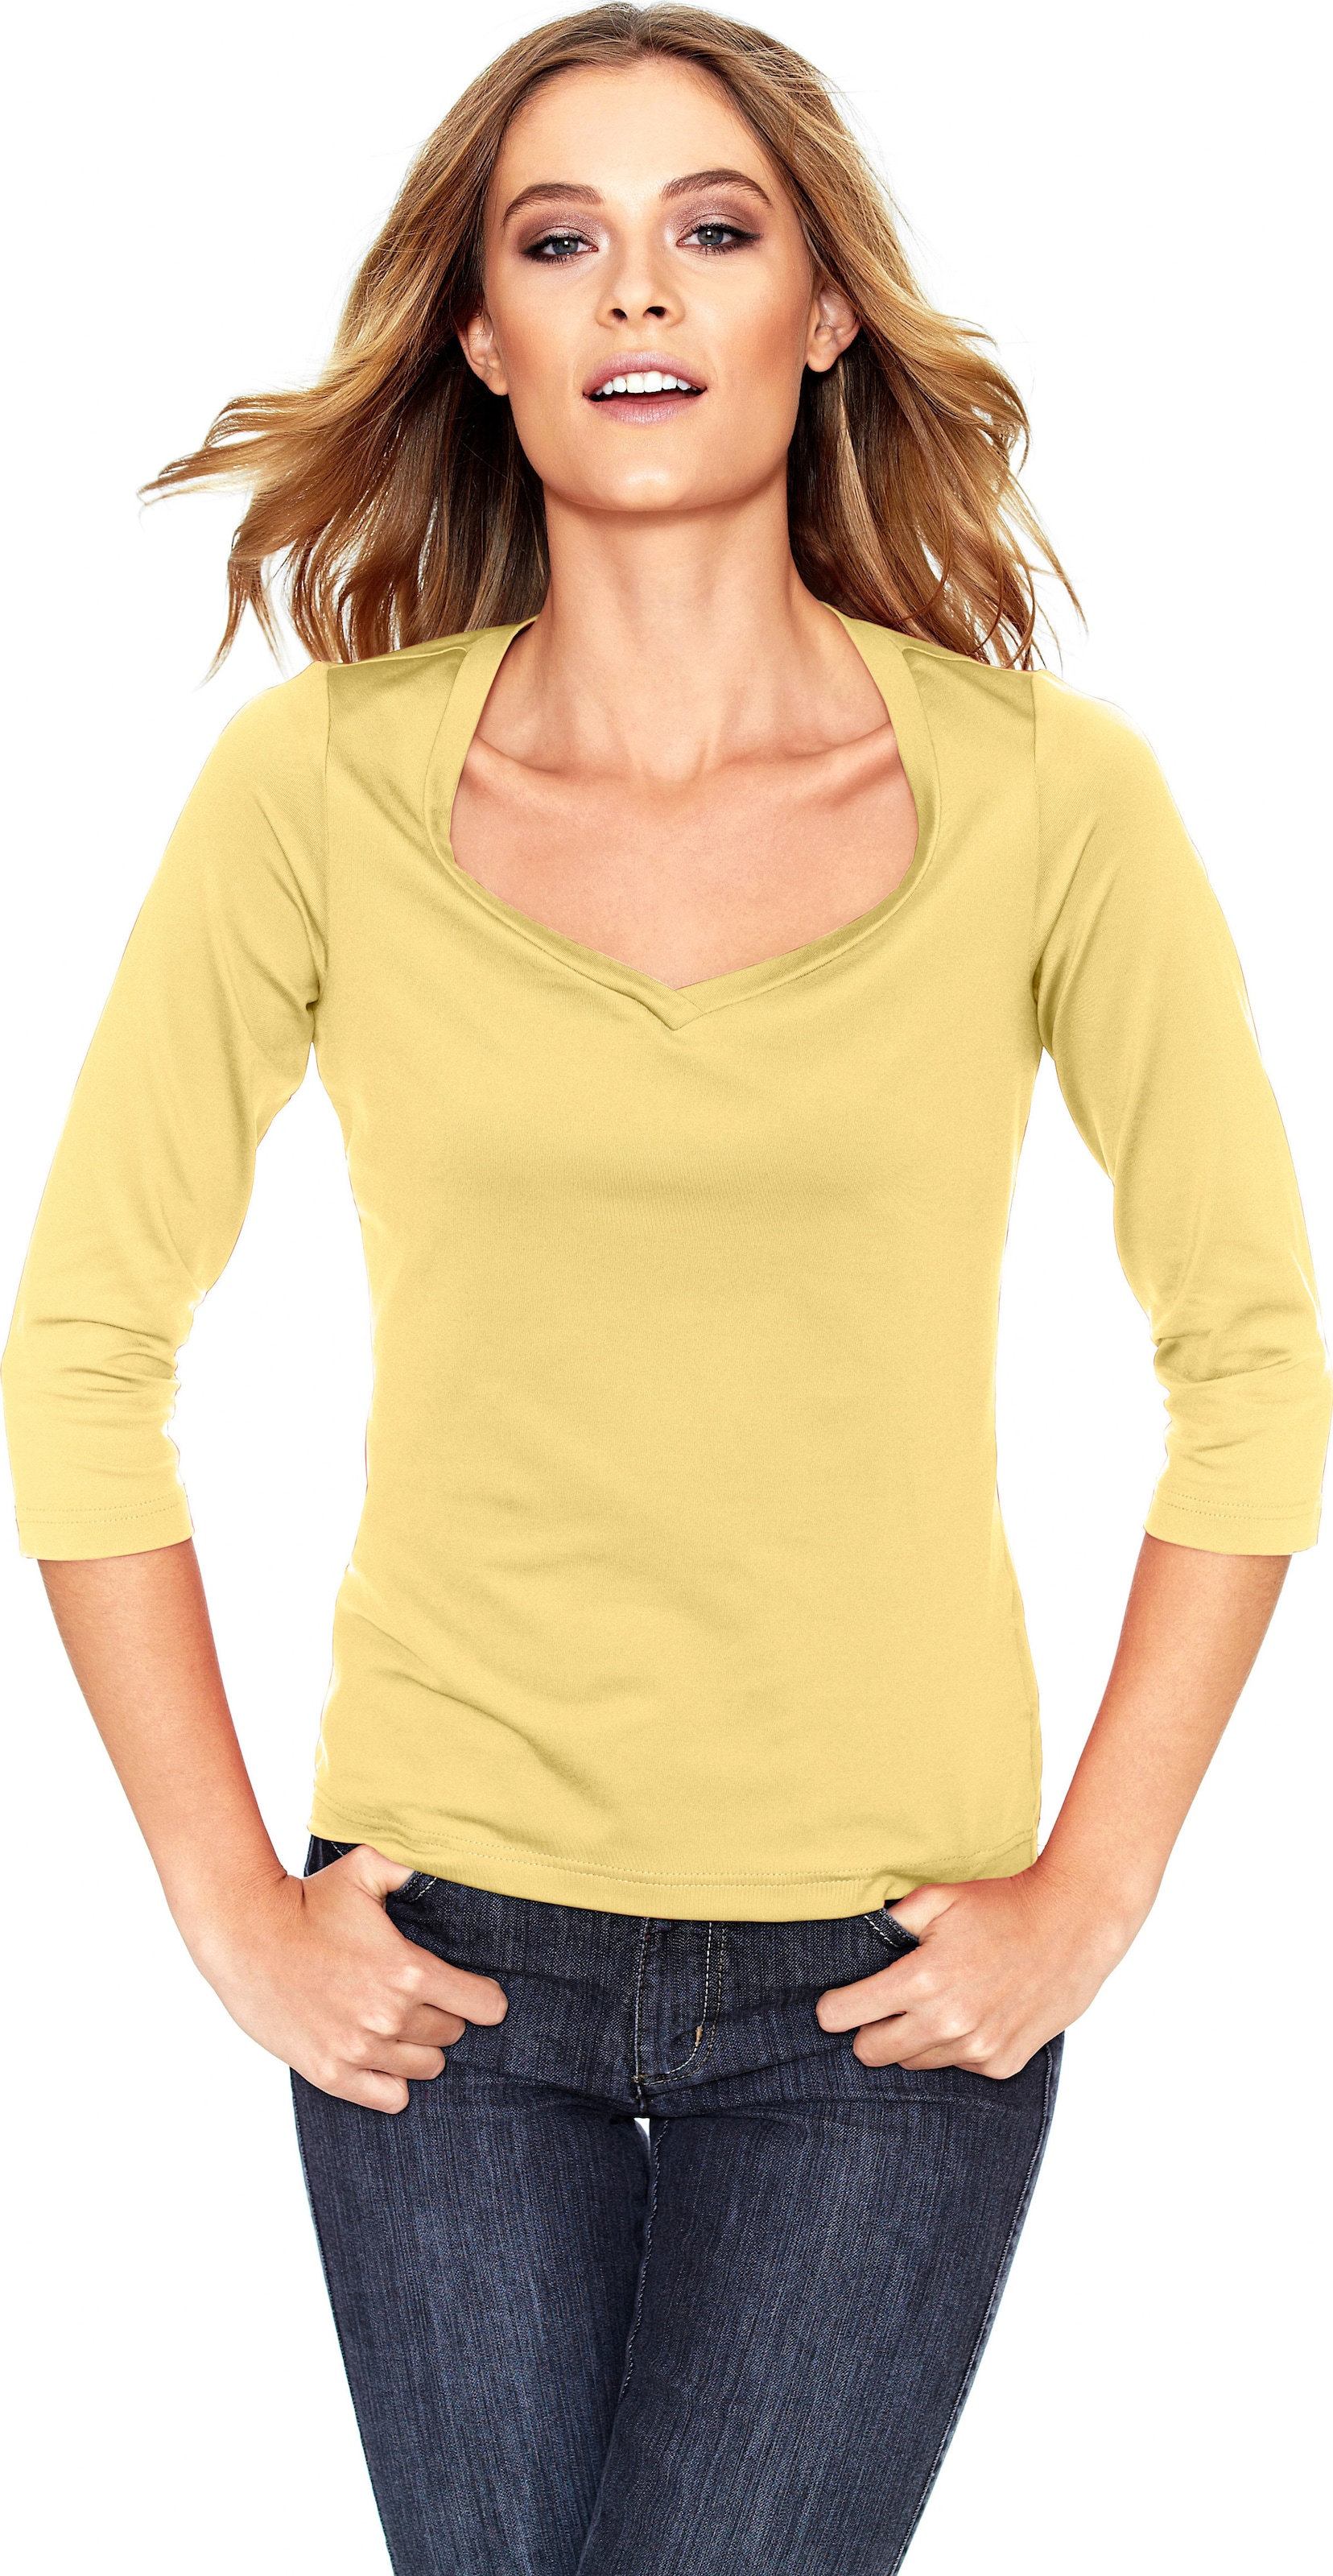 Mit Herz günstig Kaufen-Shirt in gelb von heine. Shirt in gelb von heine <![CDATA[Shirt Femininer Kombi-Style aus Tactel, in angenehmer Stretch-Qualität. Mit hoher Farbbrillanz und leichtem Glanz. Figurbetont, mit Herzausschnitt und 3/4-Arm.]]>. 